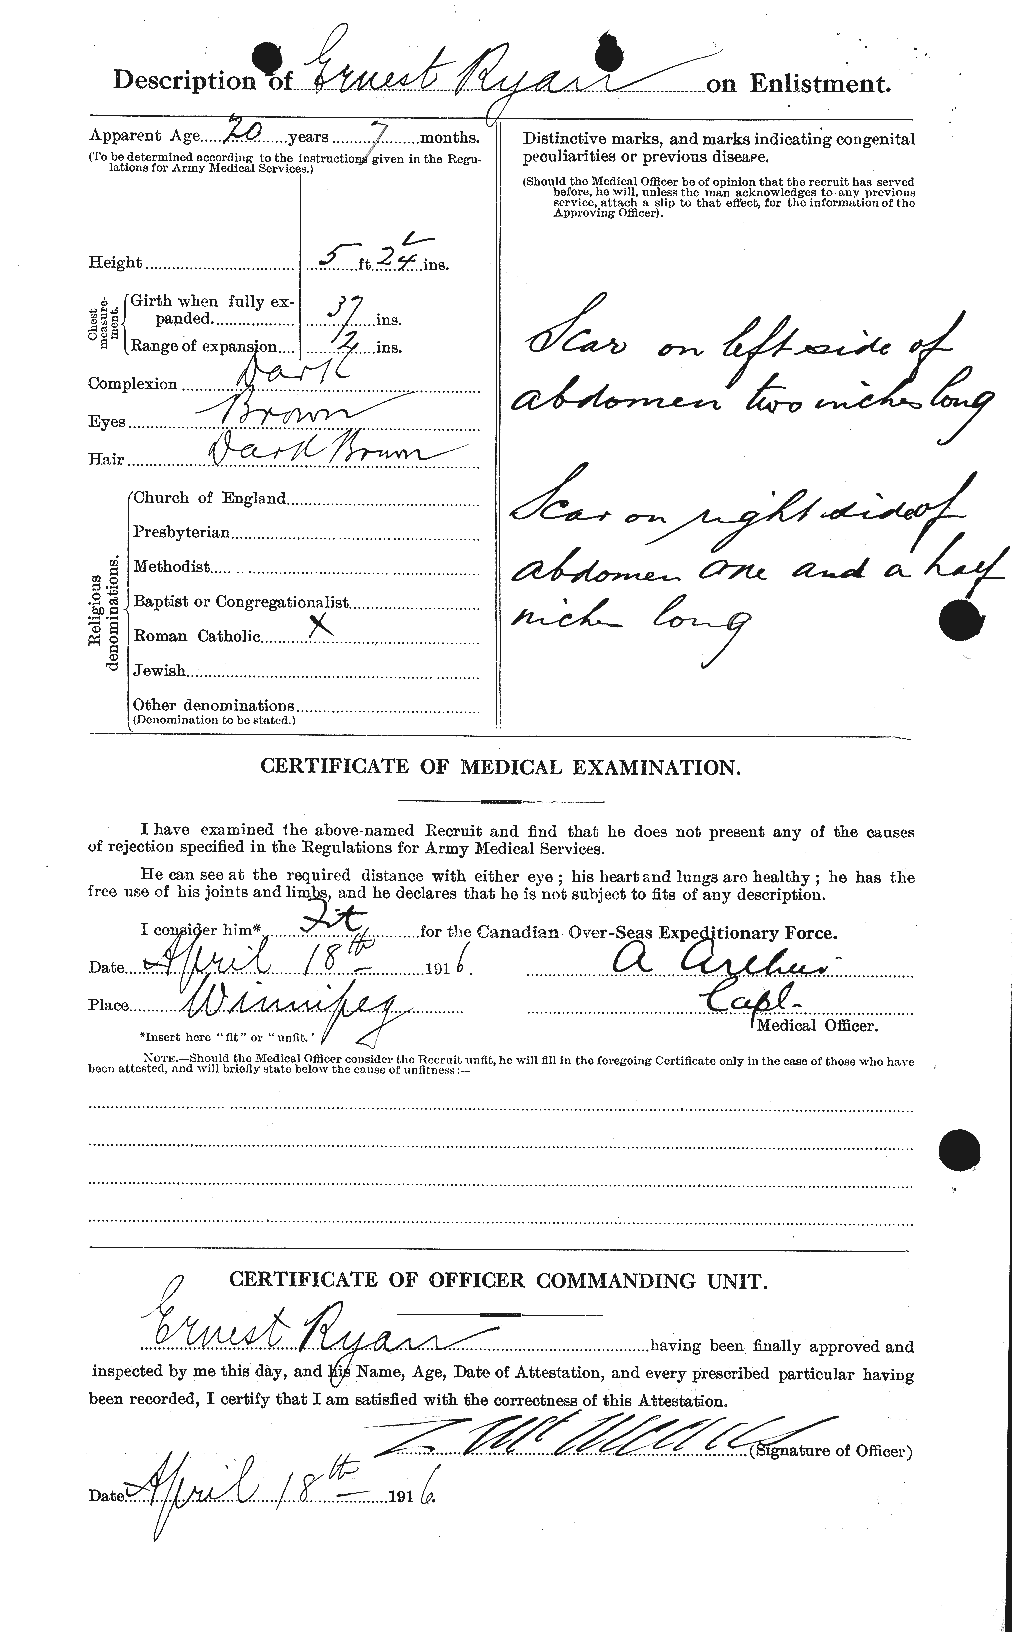 Dossiers du Personnel de la Première Guerre mondiale - CEC 620216b